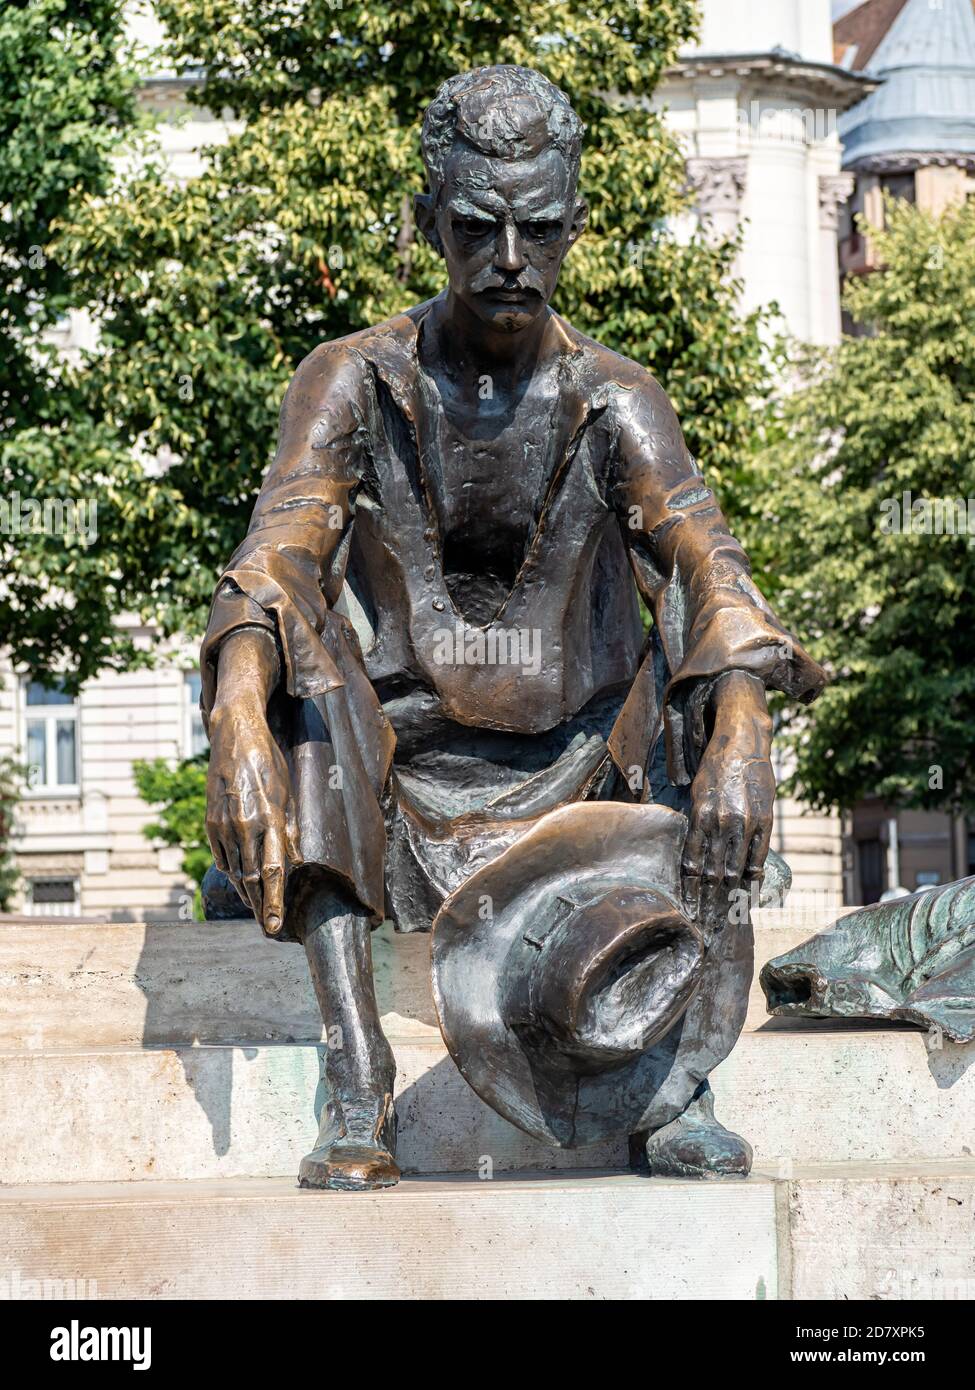 BUDAPEST, UNGARN - 16. JULI 2019: Statue der ungarischen Dichterin Attila Jozsef Stockfoto